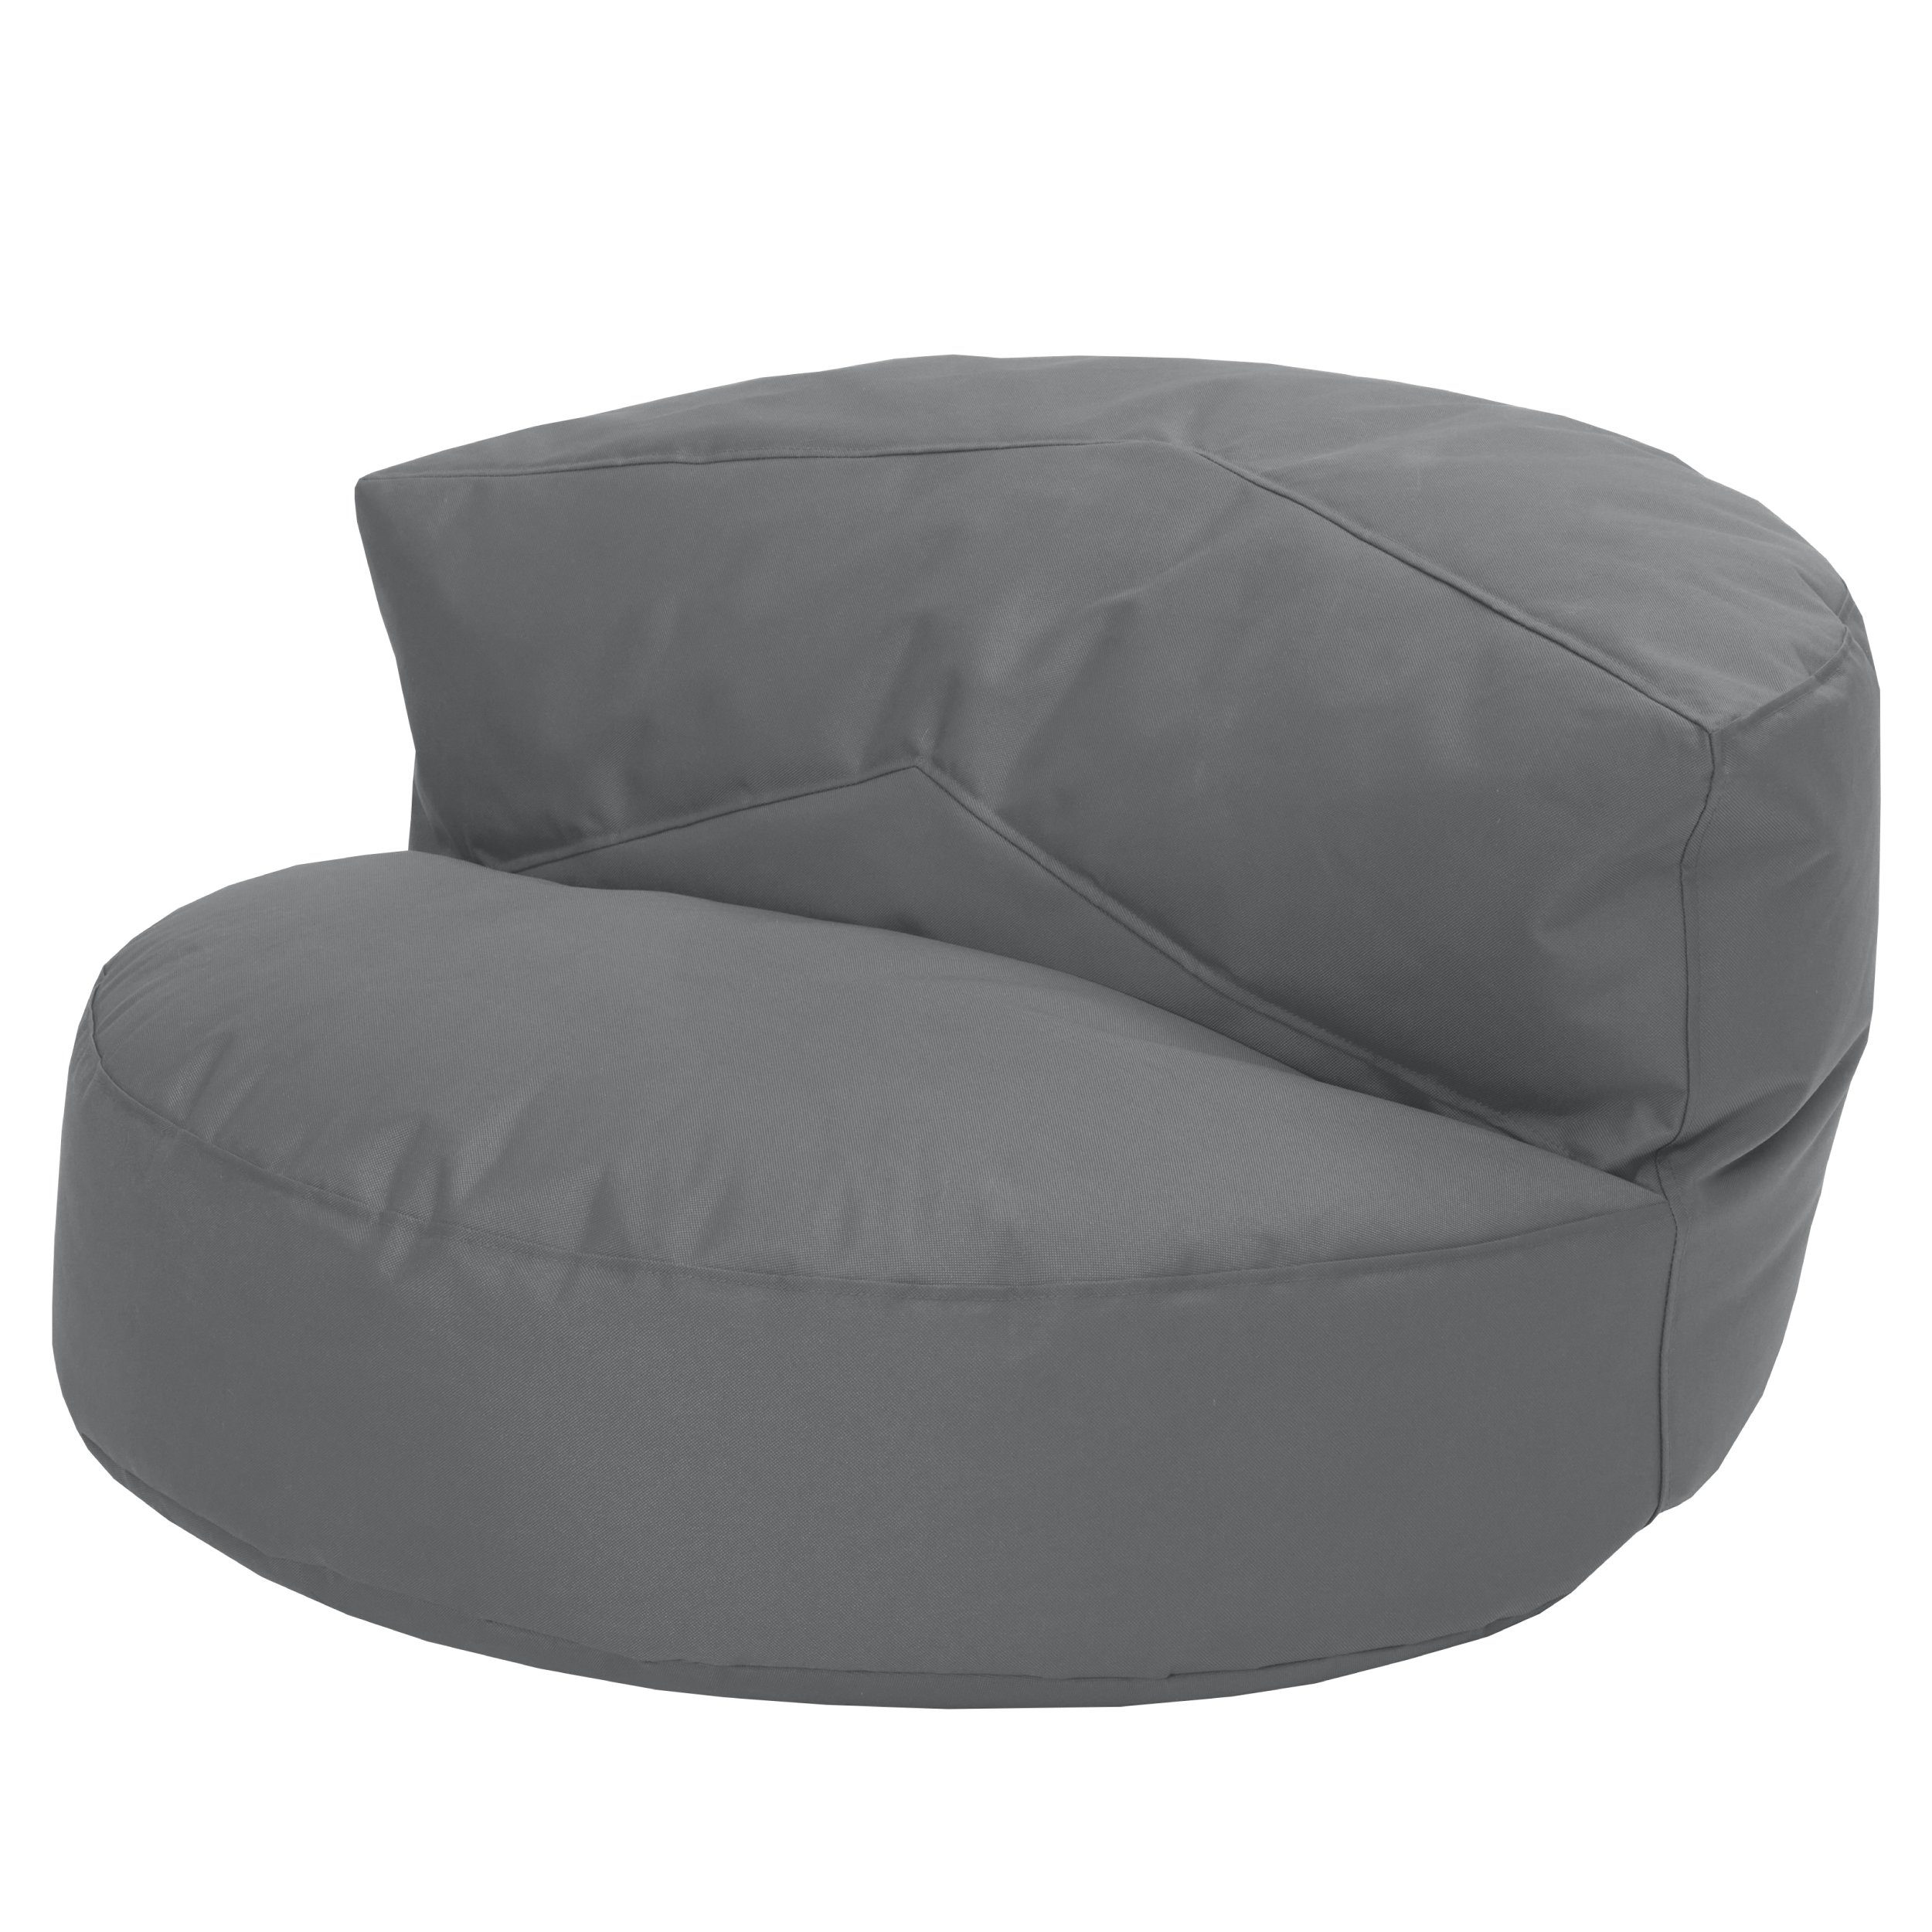 Green Bean Sitzsack Outdoor & Indoor Sofa mit EPS Perlen Füllung (mit Rückenlehne, wasserabweisender & abwaschbarer Bezug), Couch Sitzmöglichkeit Gartenliege mit Rückenlehne Grau